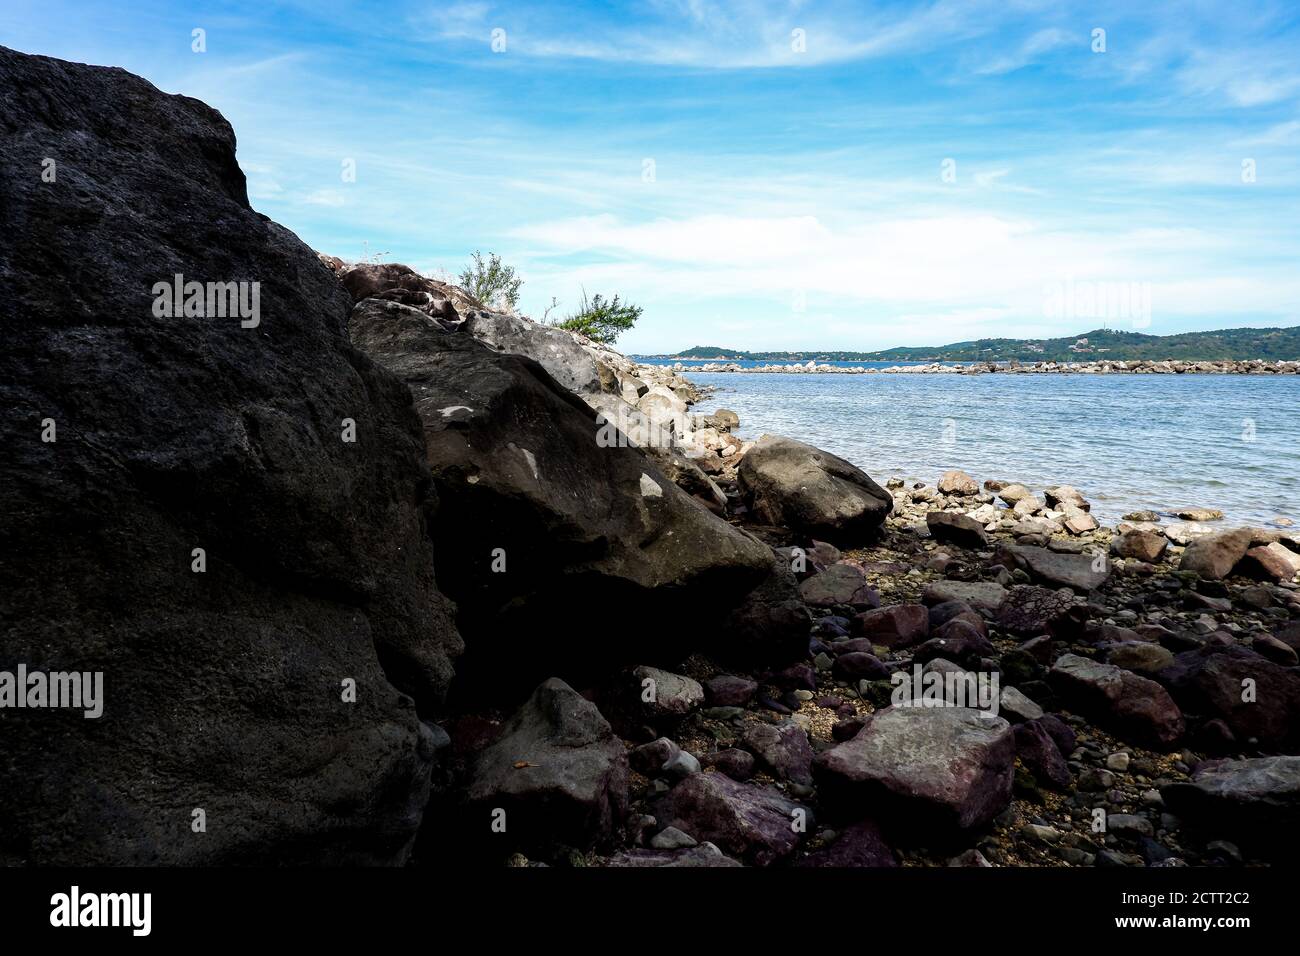 De grandes roches le long de la côte rocheuse de plage avec horizon de mer vue Banque D'Images